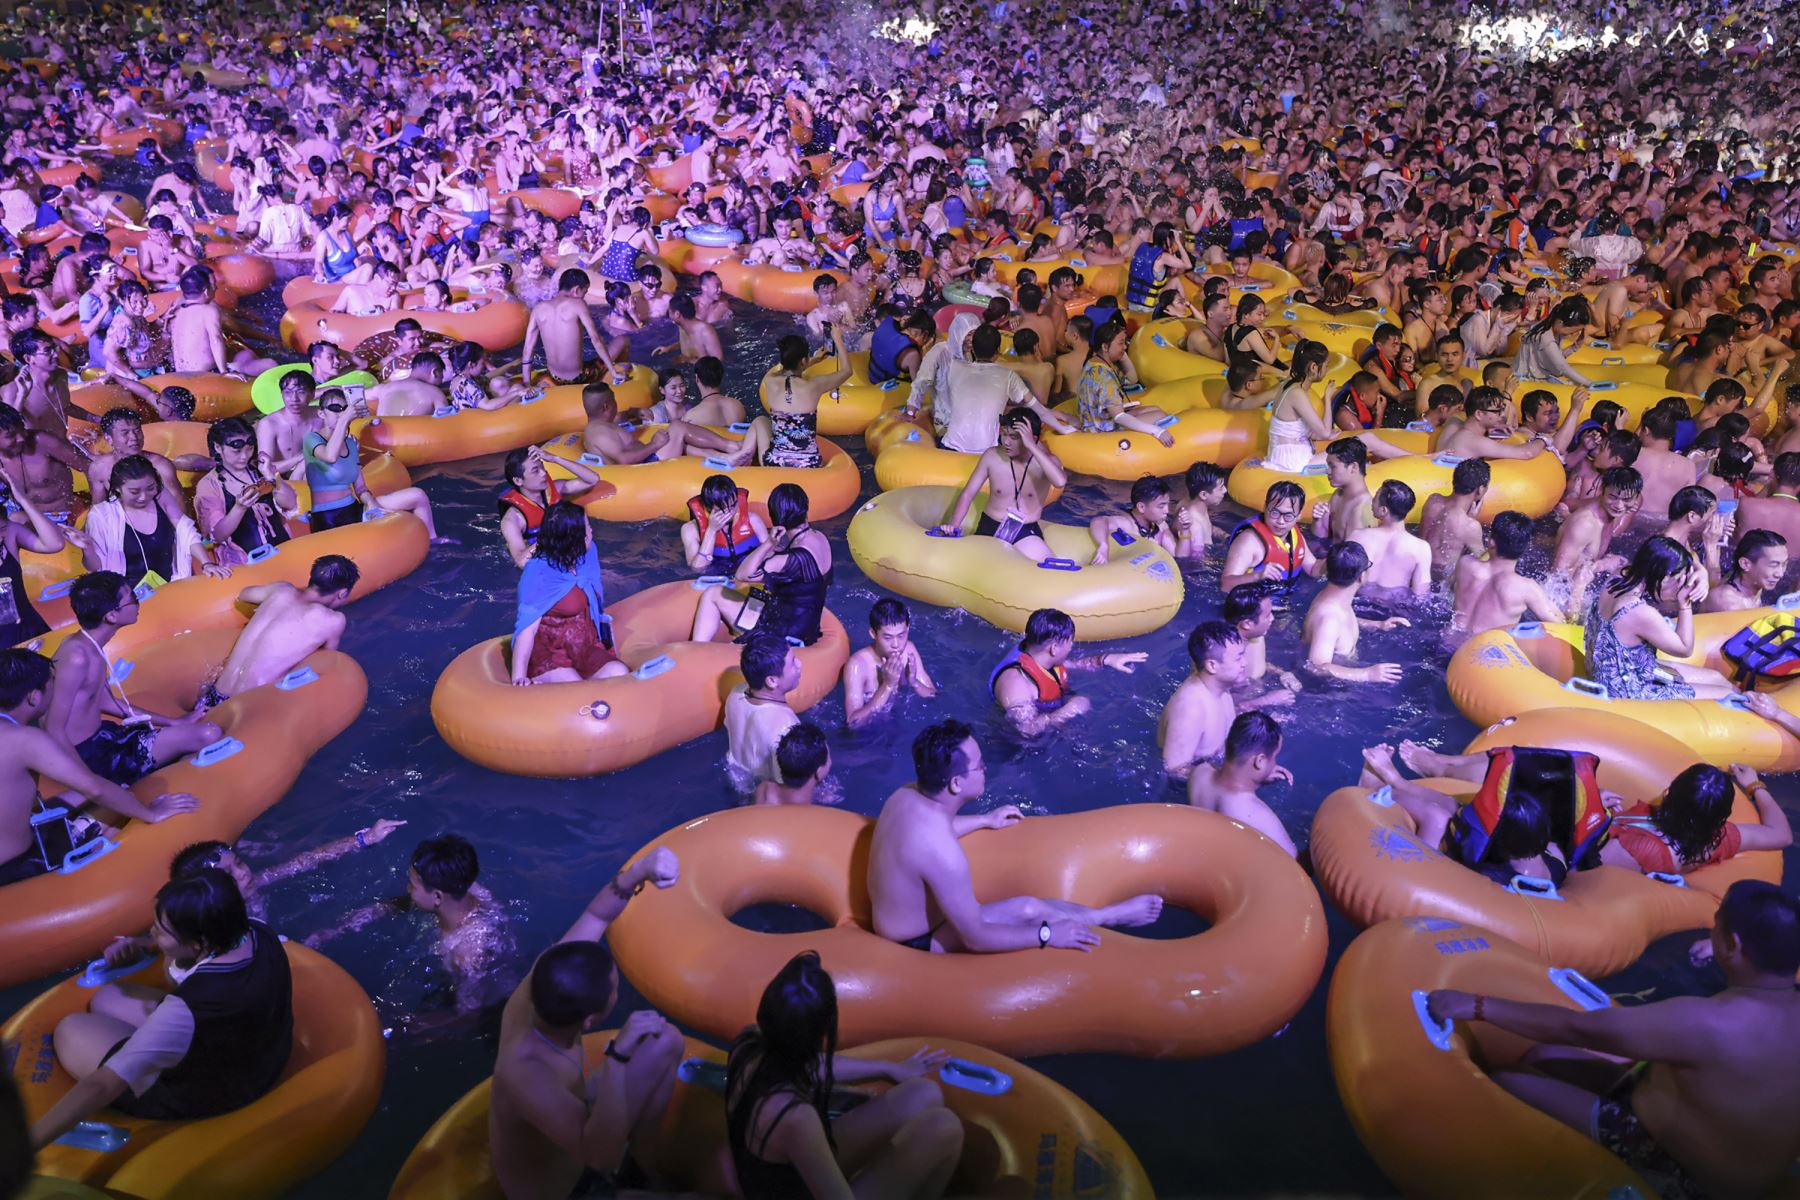 El Maya Beach Water Park se llenó de gente y miles de personas bailaron apretujadas al ritmo de la música electrónica, sin utilizar mascarillas. Foto: AFP